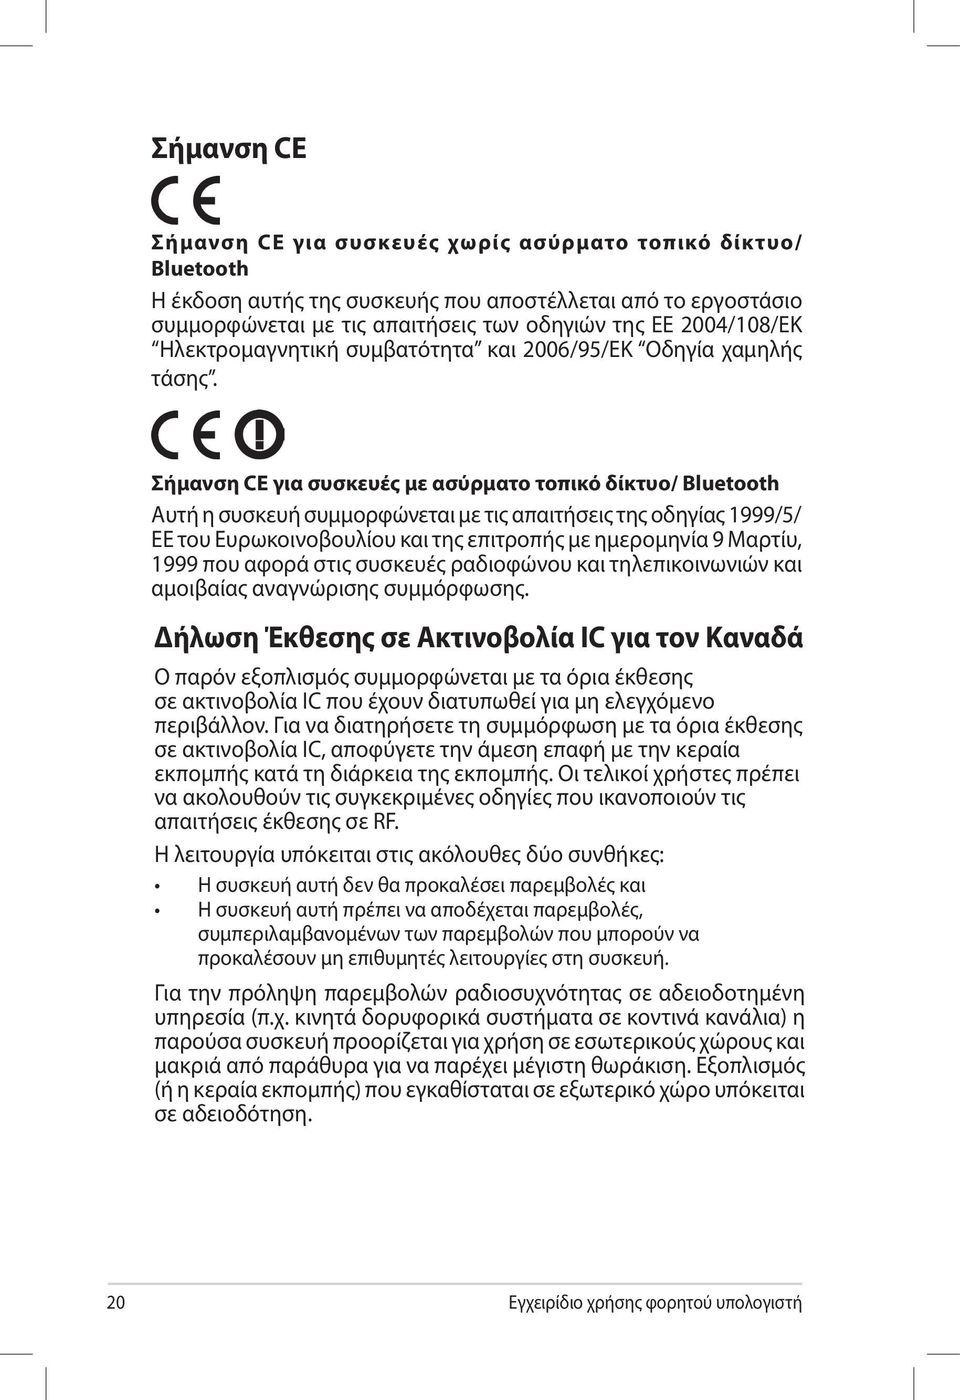 Σήμανση CE για συσκευές με ασύρματο τοπικό δίκτυο/ Bluetooth Αυτή η συσκευή συμμορφώνεται με τις απαιτήσεις της οδηγίας 1999/5/ ΕΕ του Ευρωκοινοβουλίου και της επιτροπής με ημερομηνία 9 Μαρτίυ, 1999